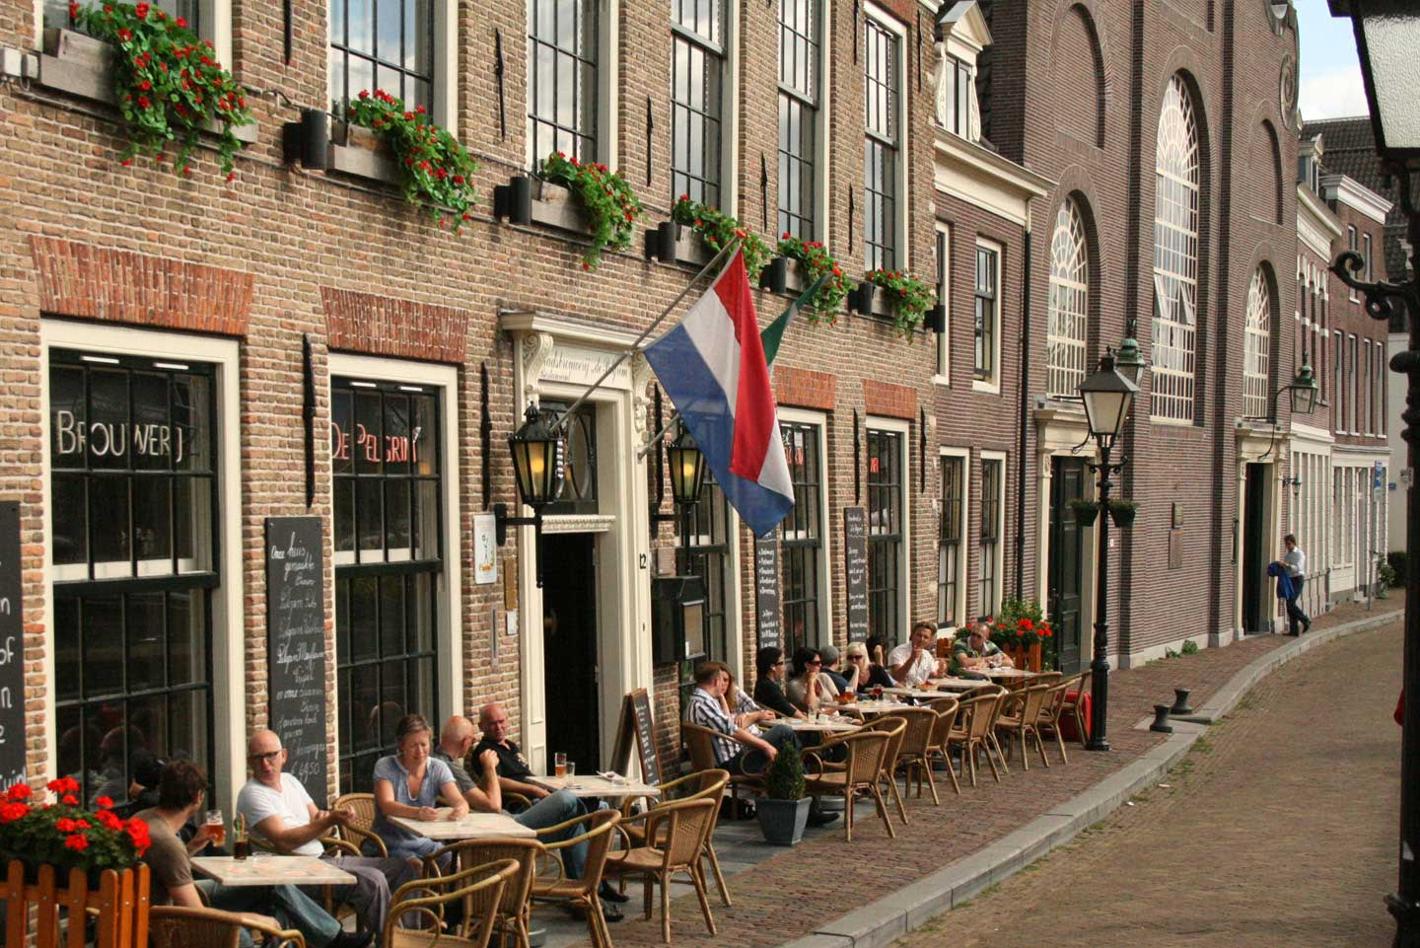 Foto Stadsbrouwerij de Pelgrim in Rotterdam, Eten & drinken, Tussendoor, Borrel, Diner - #1